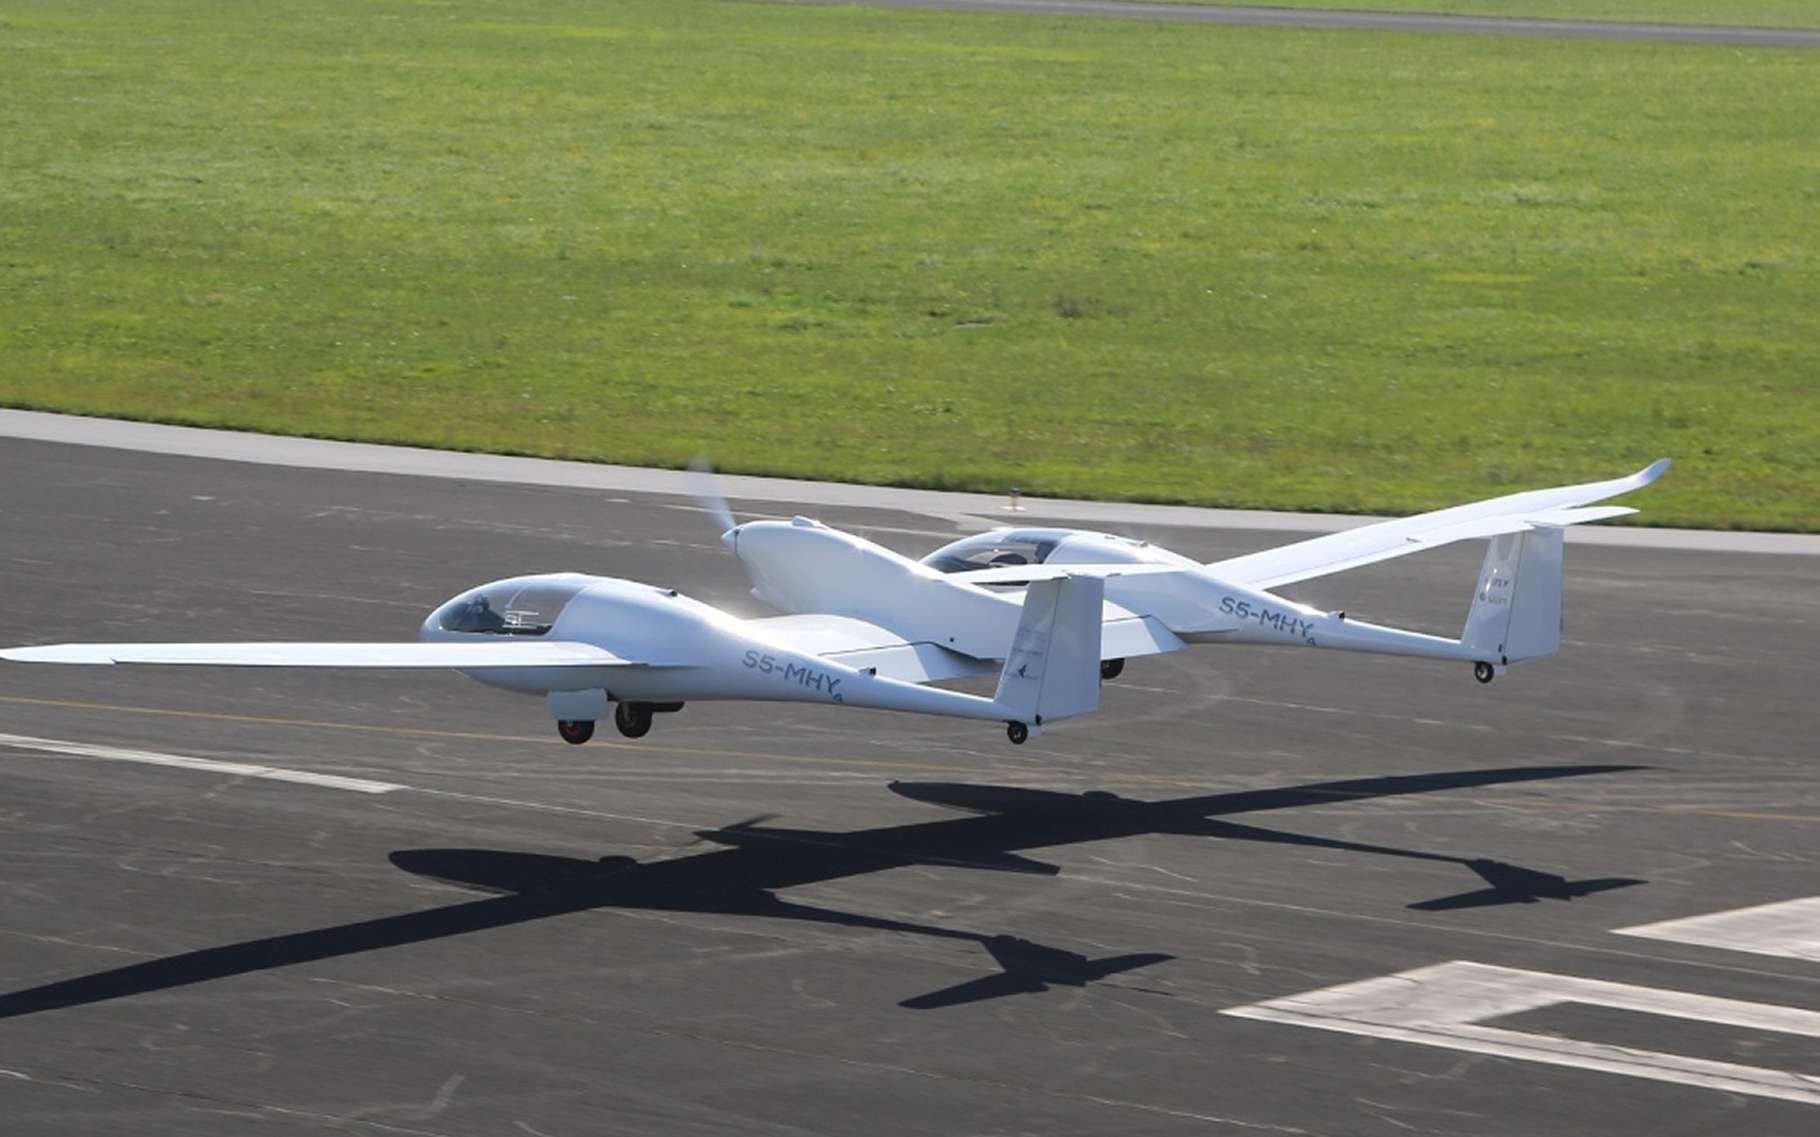 Le HY4 au décollage de l'aéroport de Stuttgart, le 29 septembre 2016. Ce prototype est un outil de recherche pour étudier la possibilité d'avions à motorisation électrique alimenté par une pile à combustible fonctionnant à l'hydrogène embarqué et l'oxygène de l'air. © H2Fly, DLR